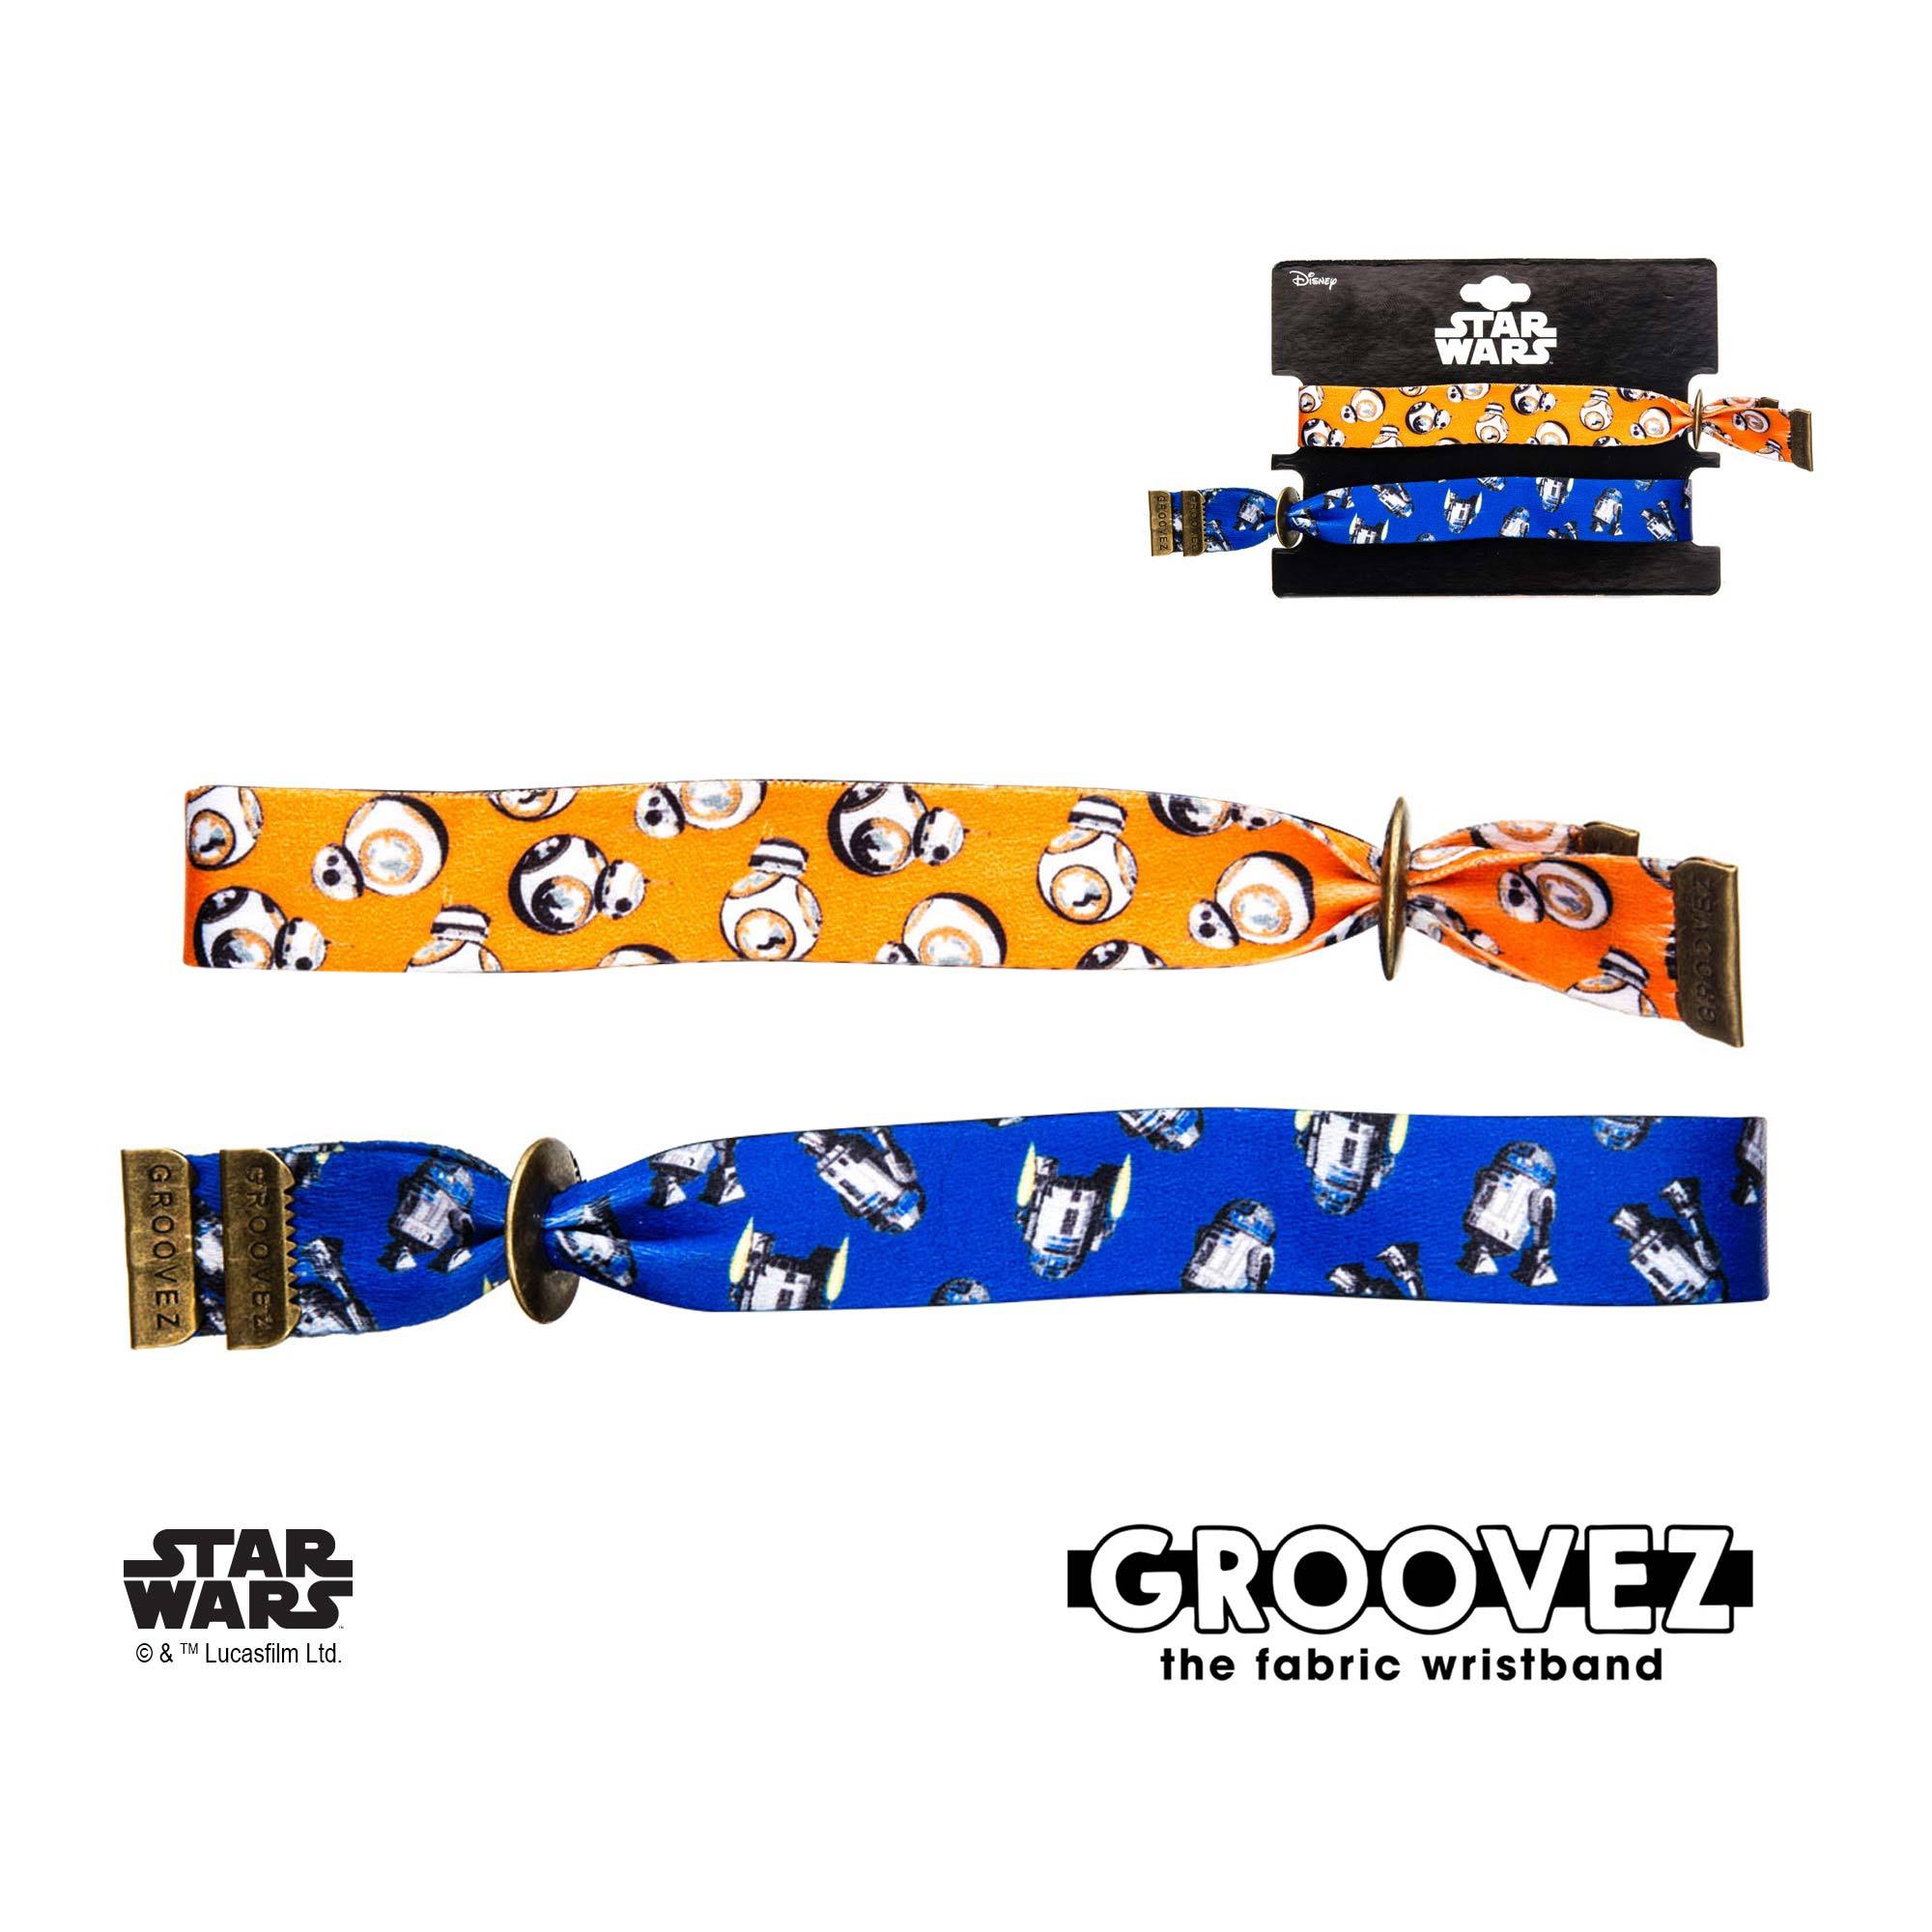 Star Wars Episode 8 BB-8 and R2-D2 Grooves (tm) Fabric Bracelet Set